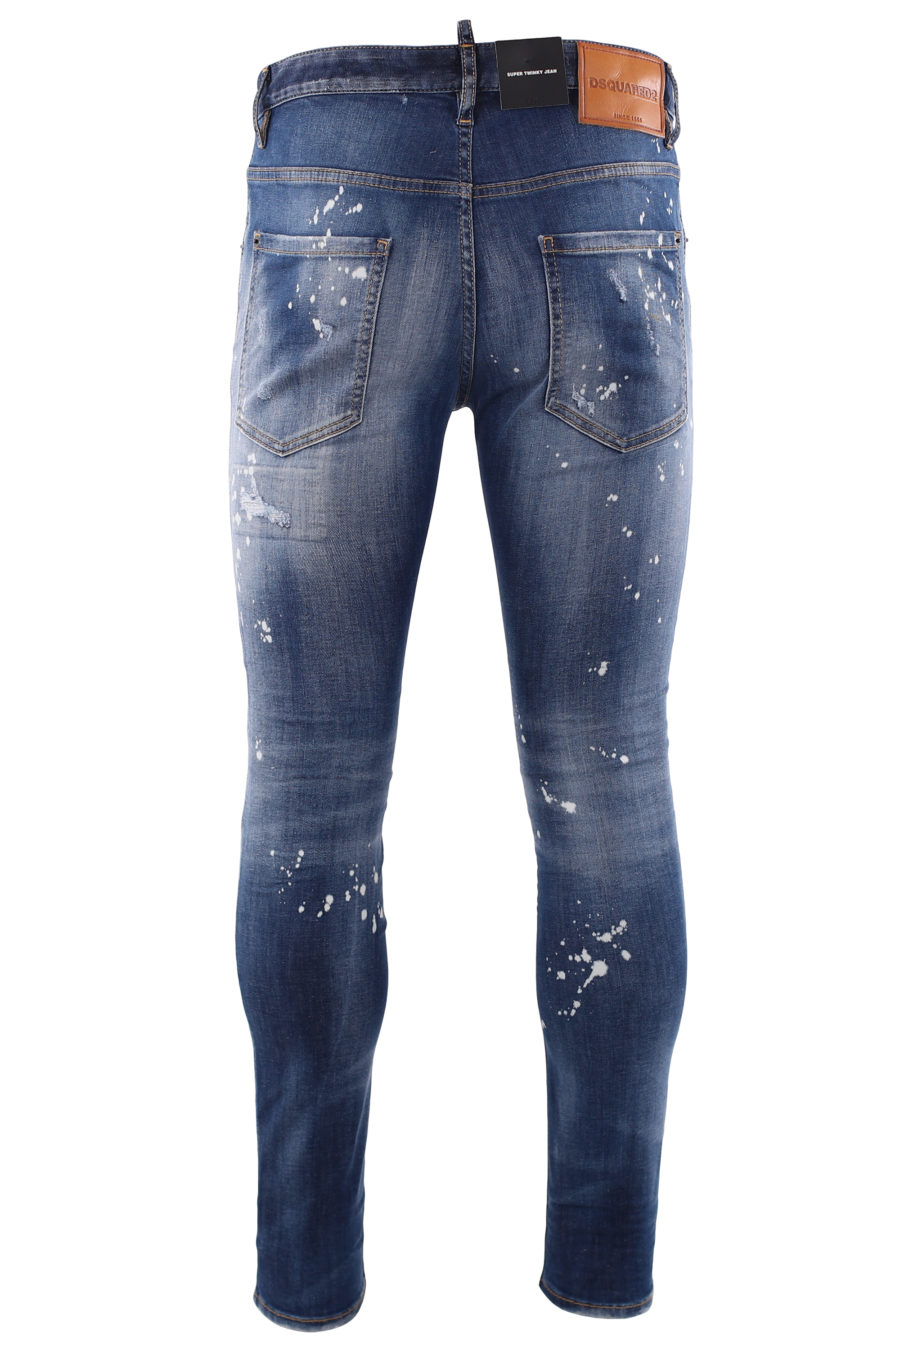 Jeans "super twinky jean" blau getragen und weiße Farbe - IMG 6683